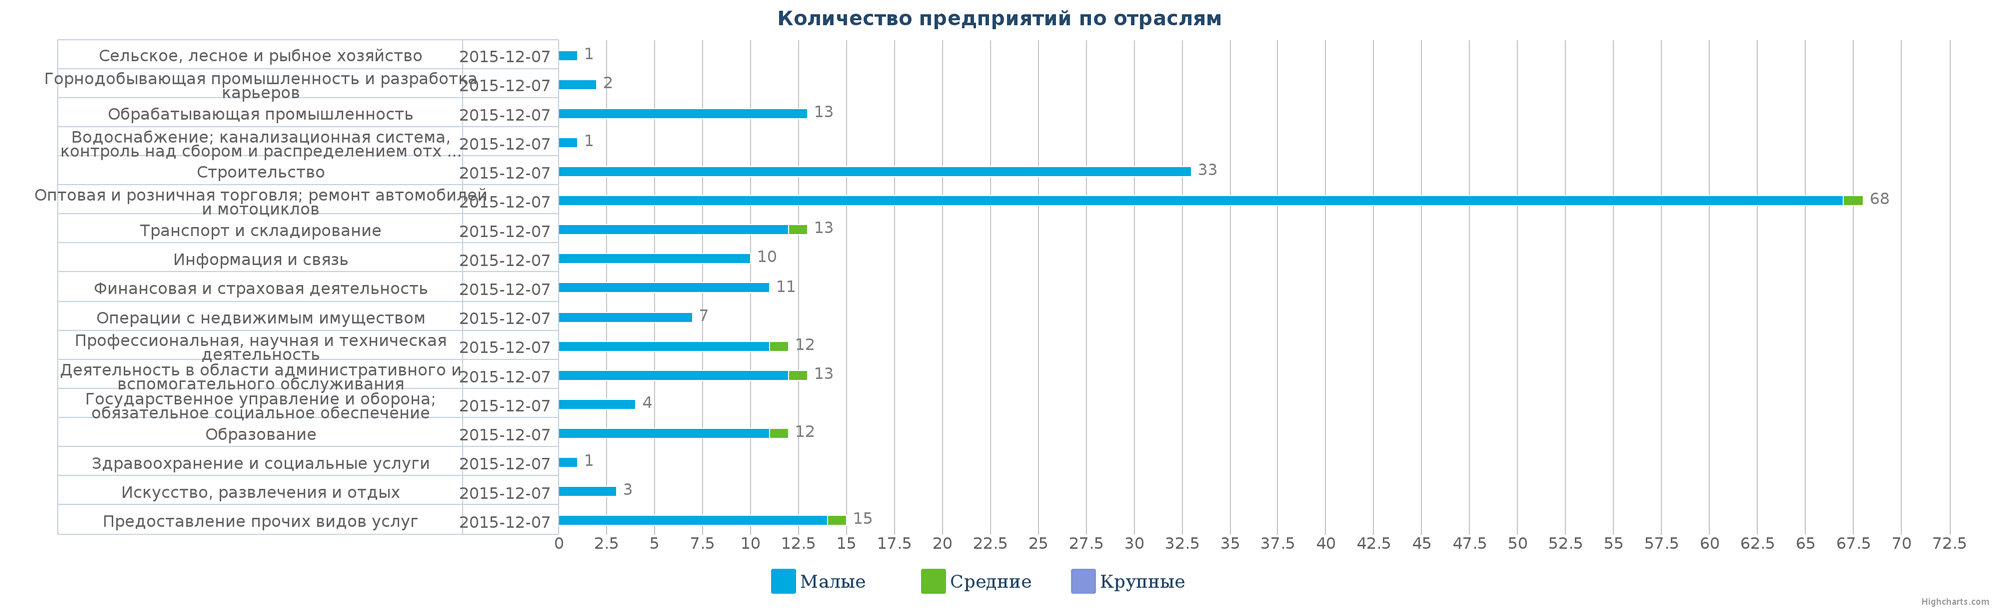 Количество ликвидированных юр/лиц в базе Казахстана по отраслям